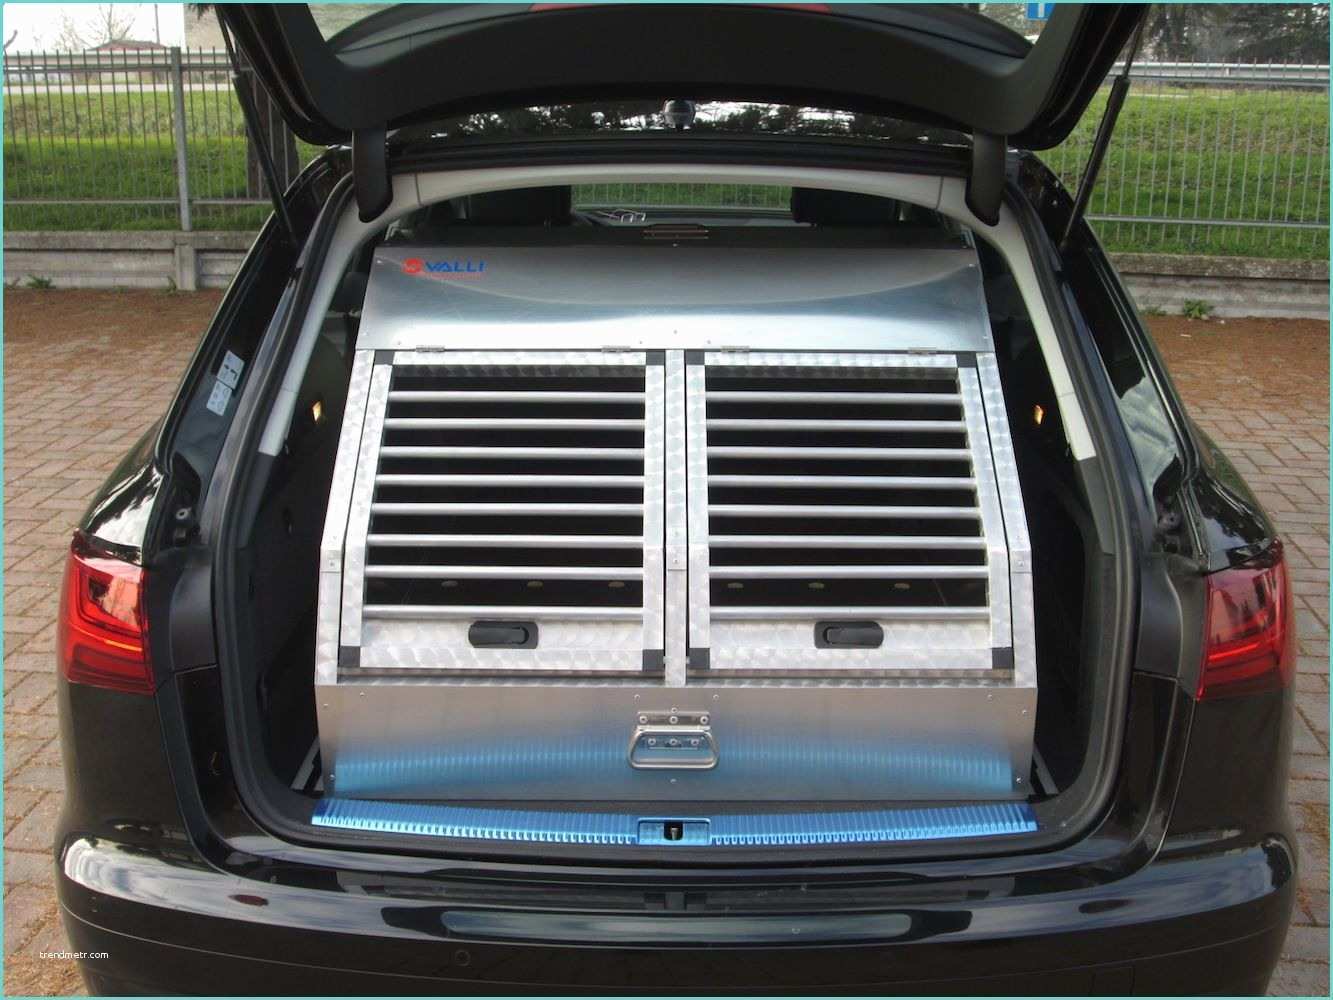 Carrelli In Alluminio Per Trasporto Gabbia Amovibile Per Audi A6 Quattro Valli S R L